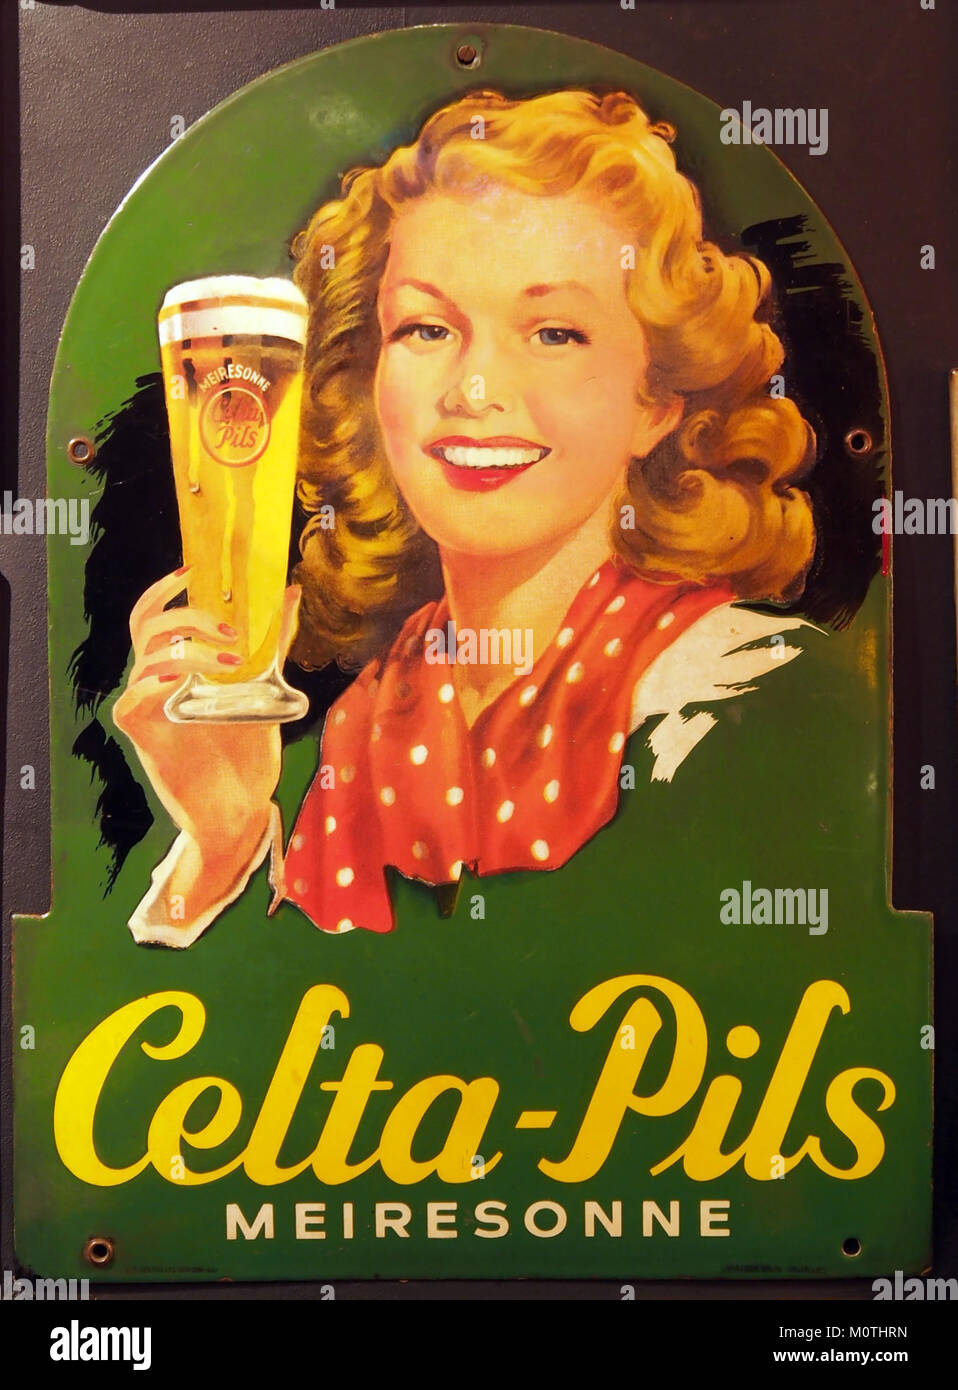 Celta-Pils Meiresonne enamel advertising sign Stock Photo